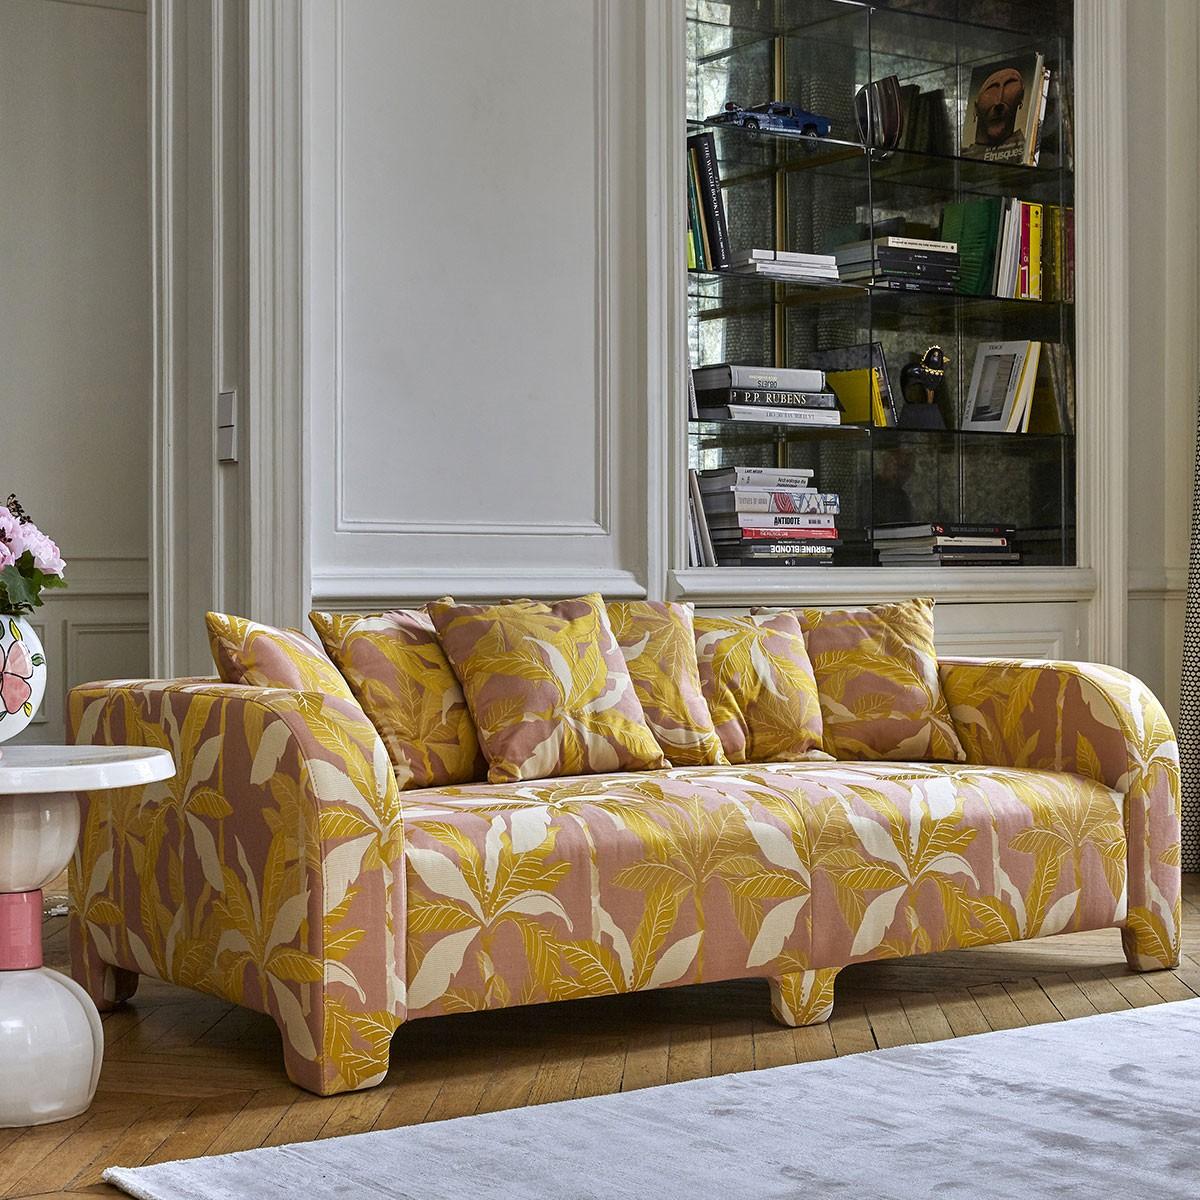 Popus Editions Graziella 3 Seater Sofa in Pink Miami Jacquard Fabric For Sale 5